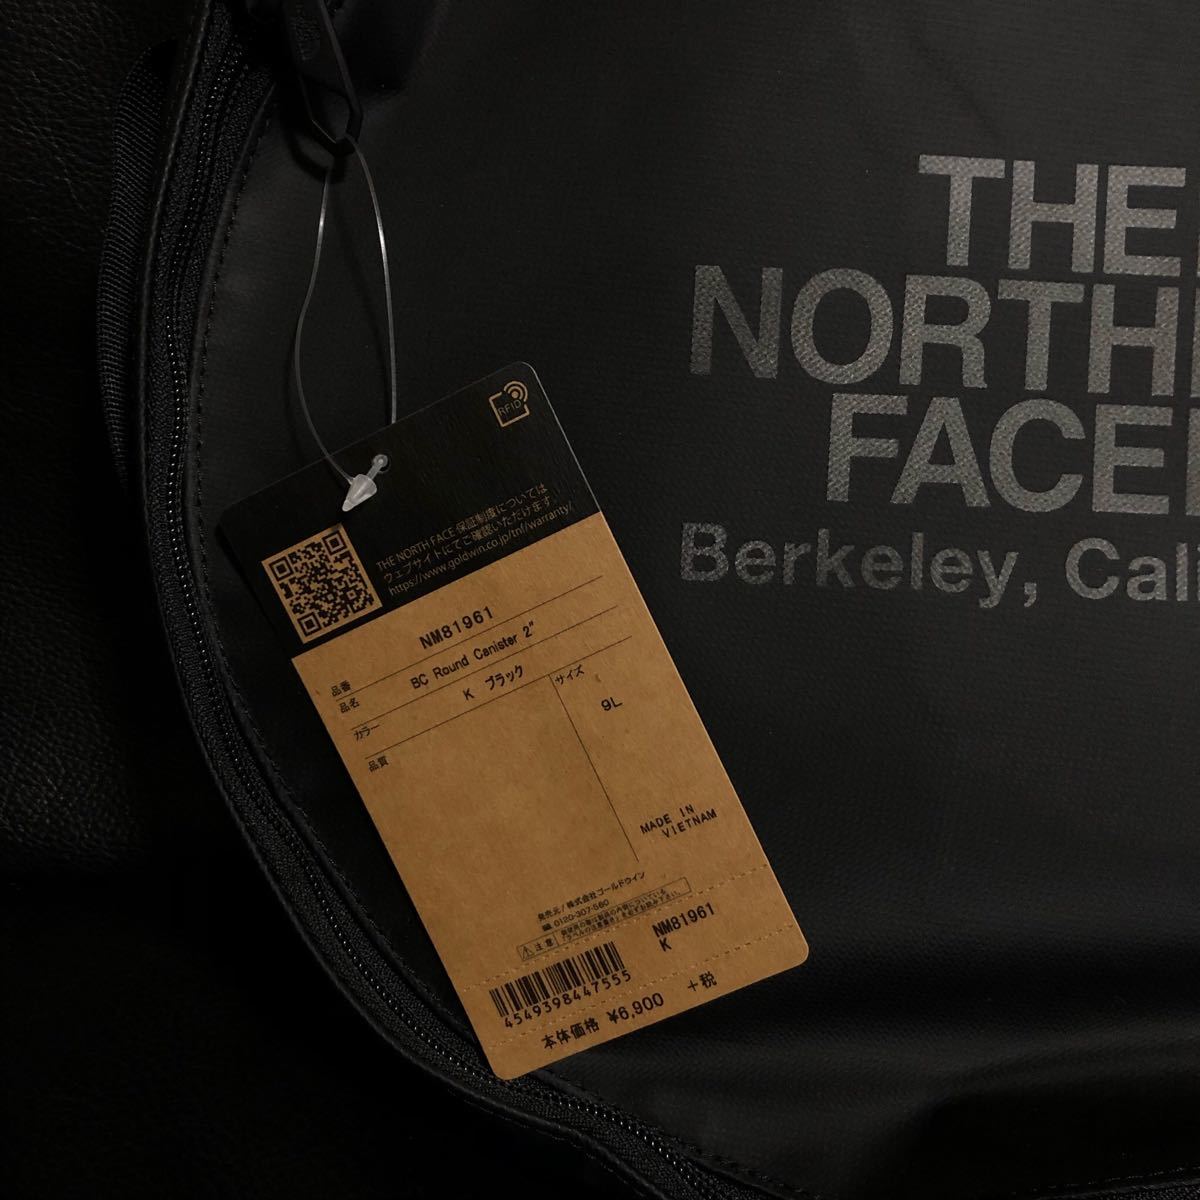 THE NORTH FACE ザノースフェイス BCラウンドキャニスター2 ブラック(黒) 新品